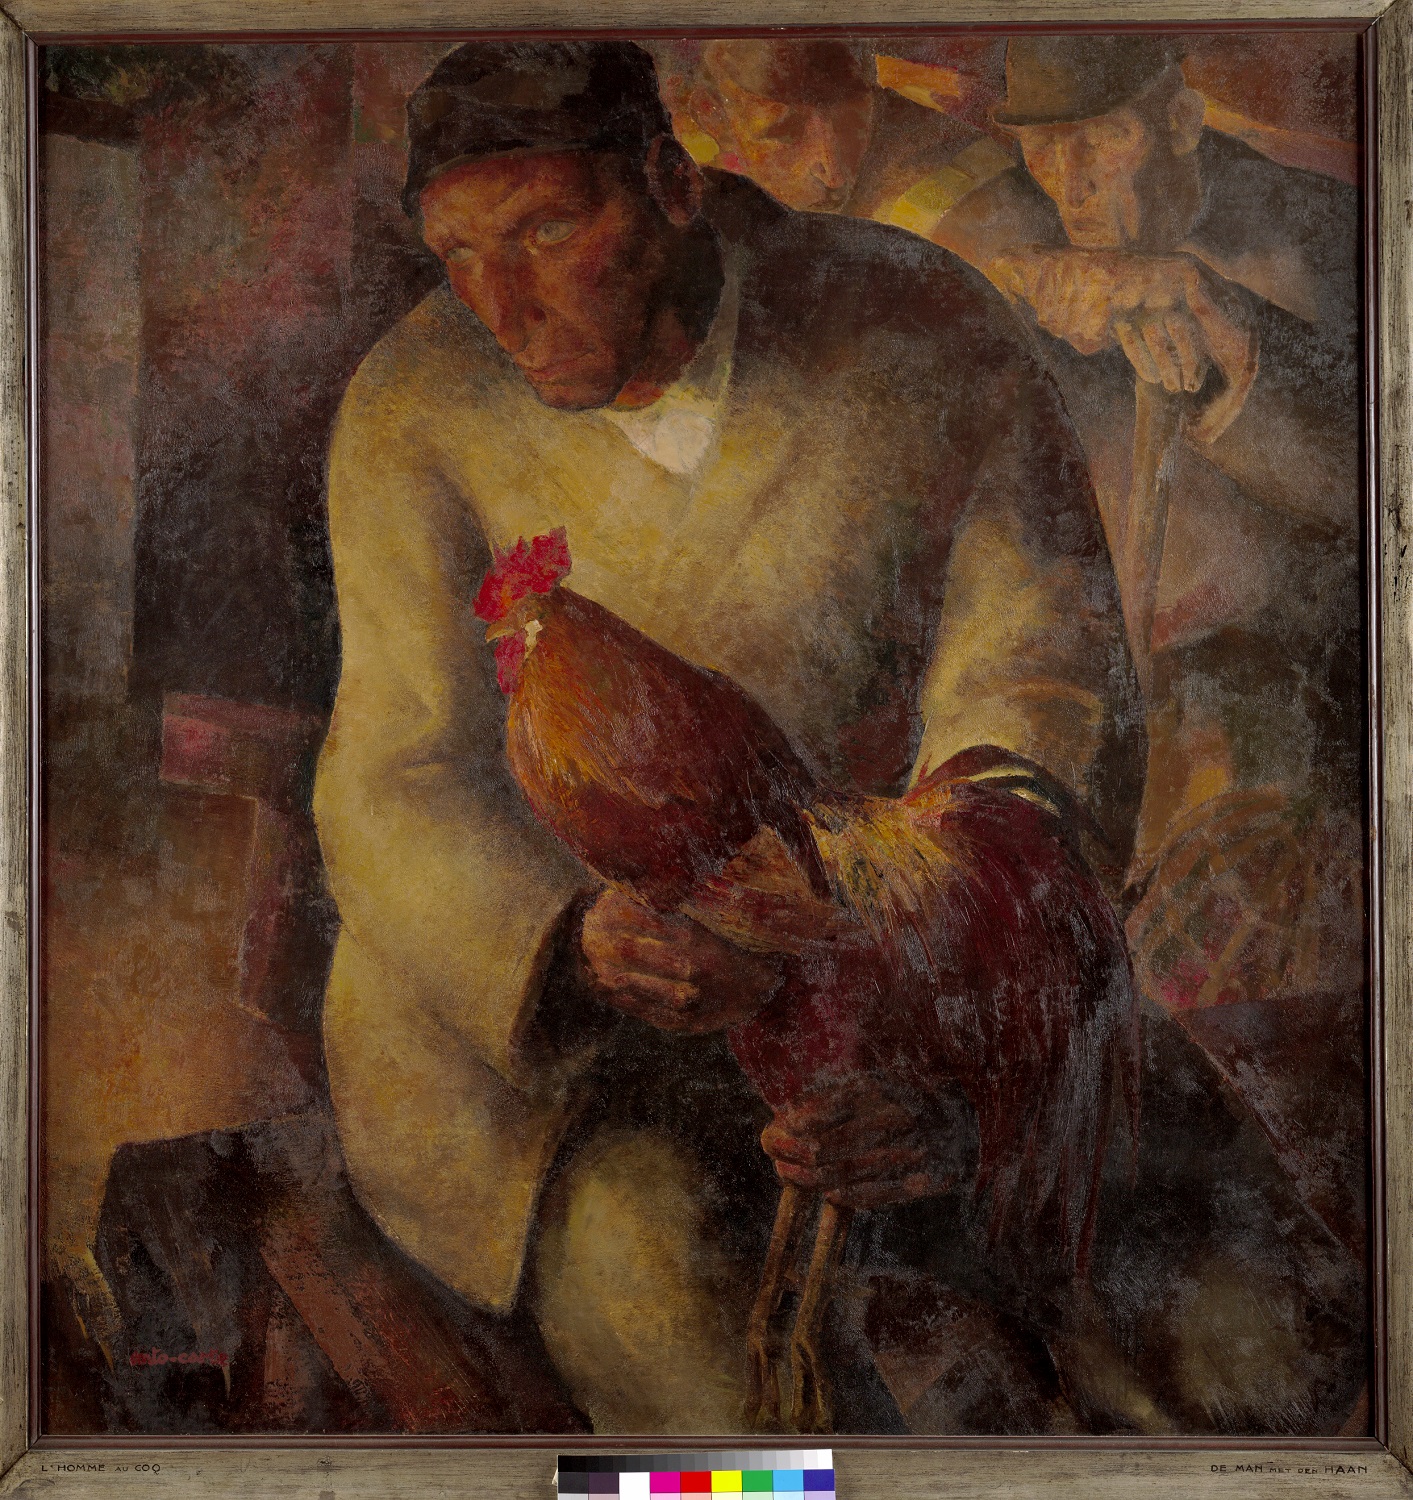 Anto-Carte, L’homme au coq, 1934 © / courtesy Collection Musée d’Ixelles